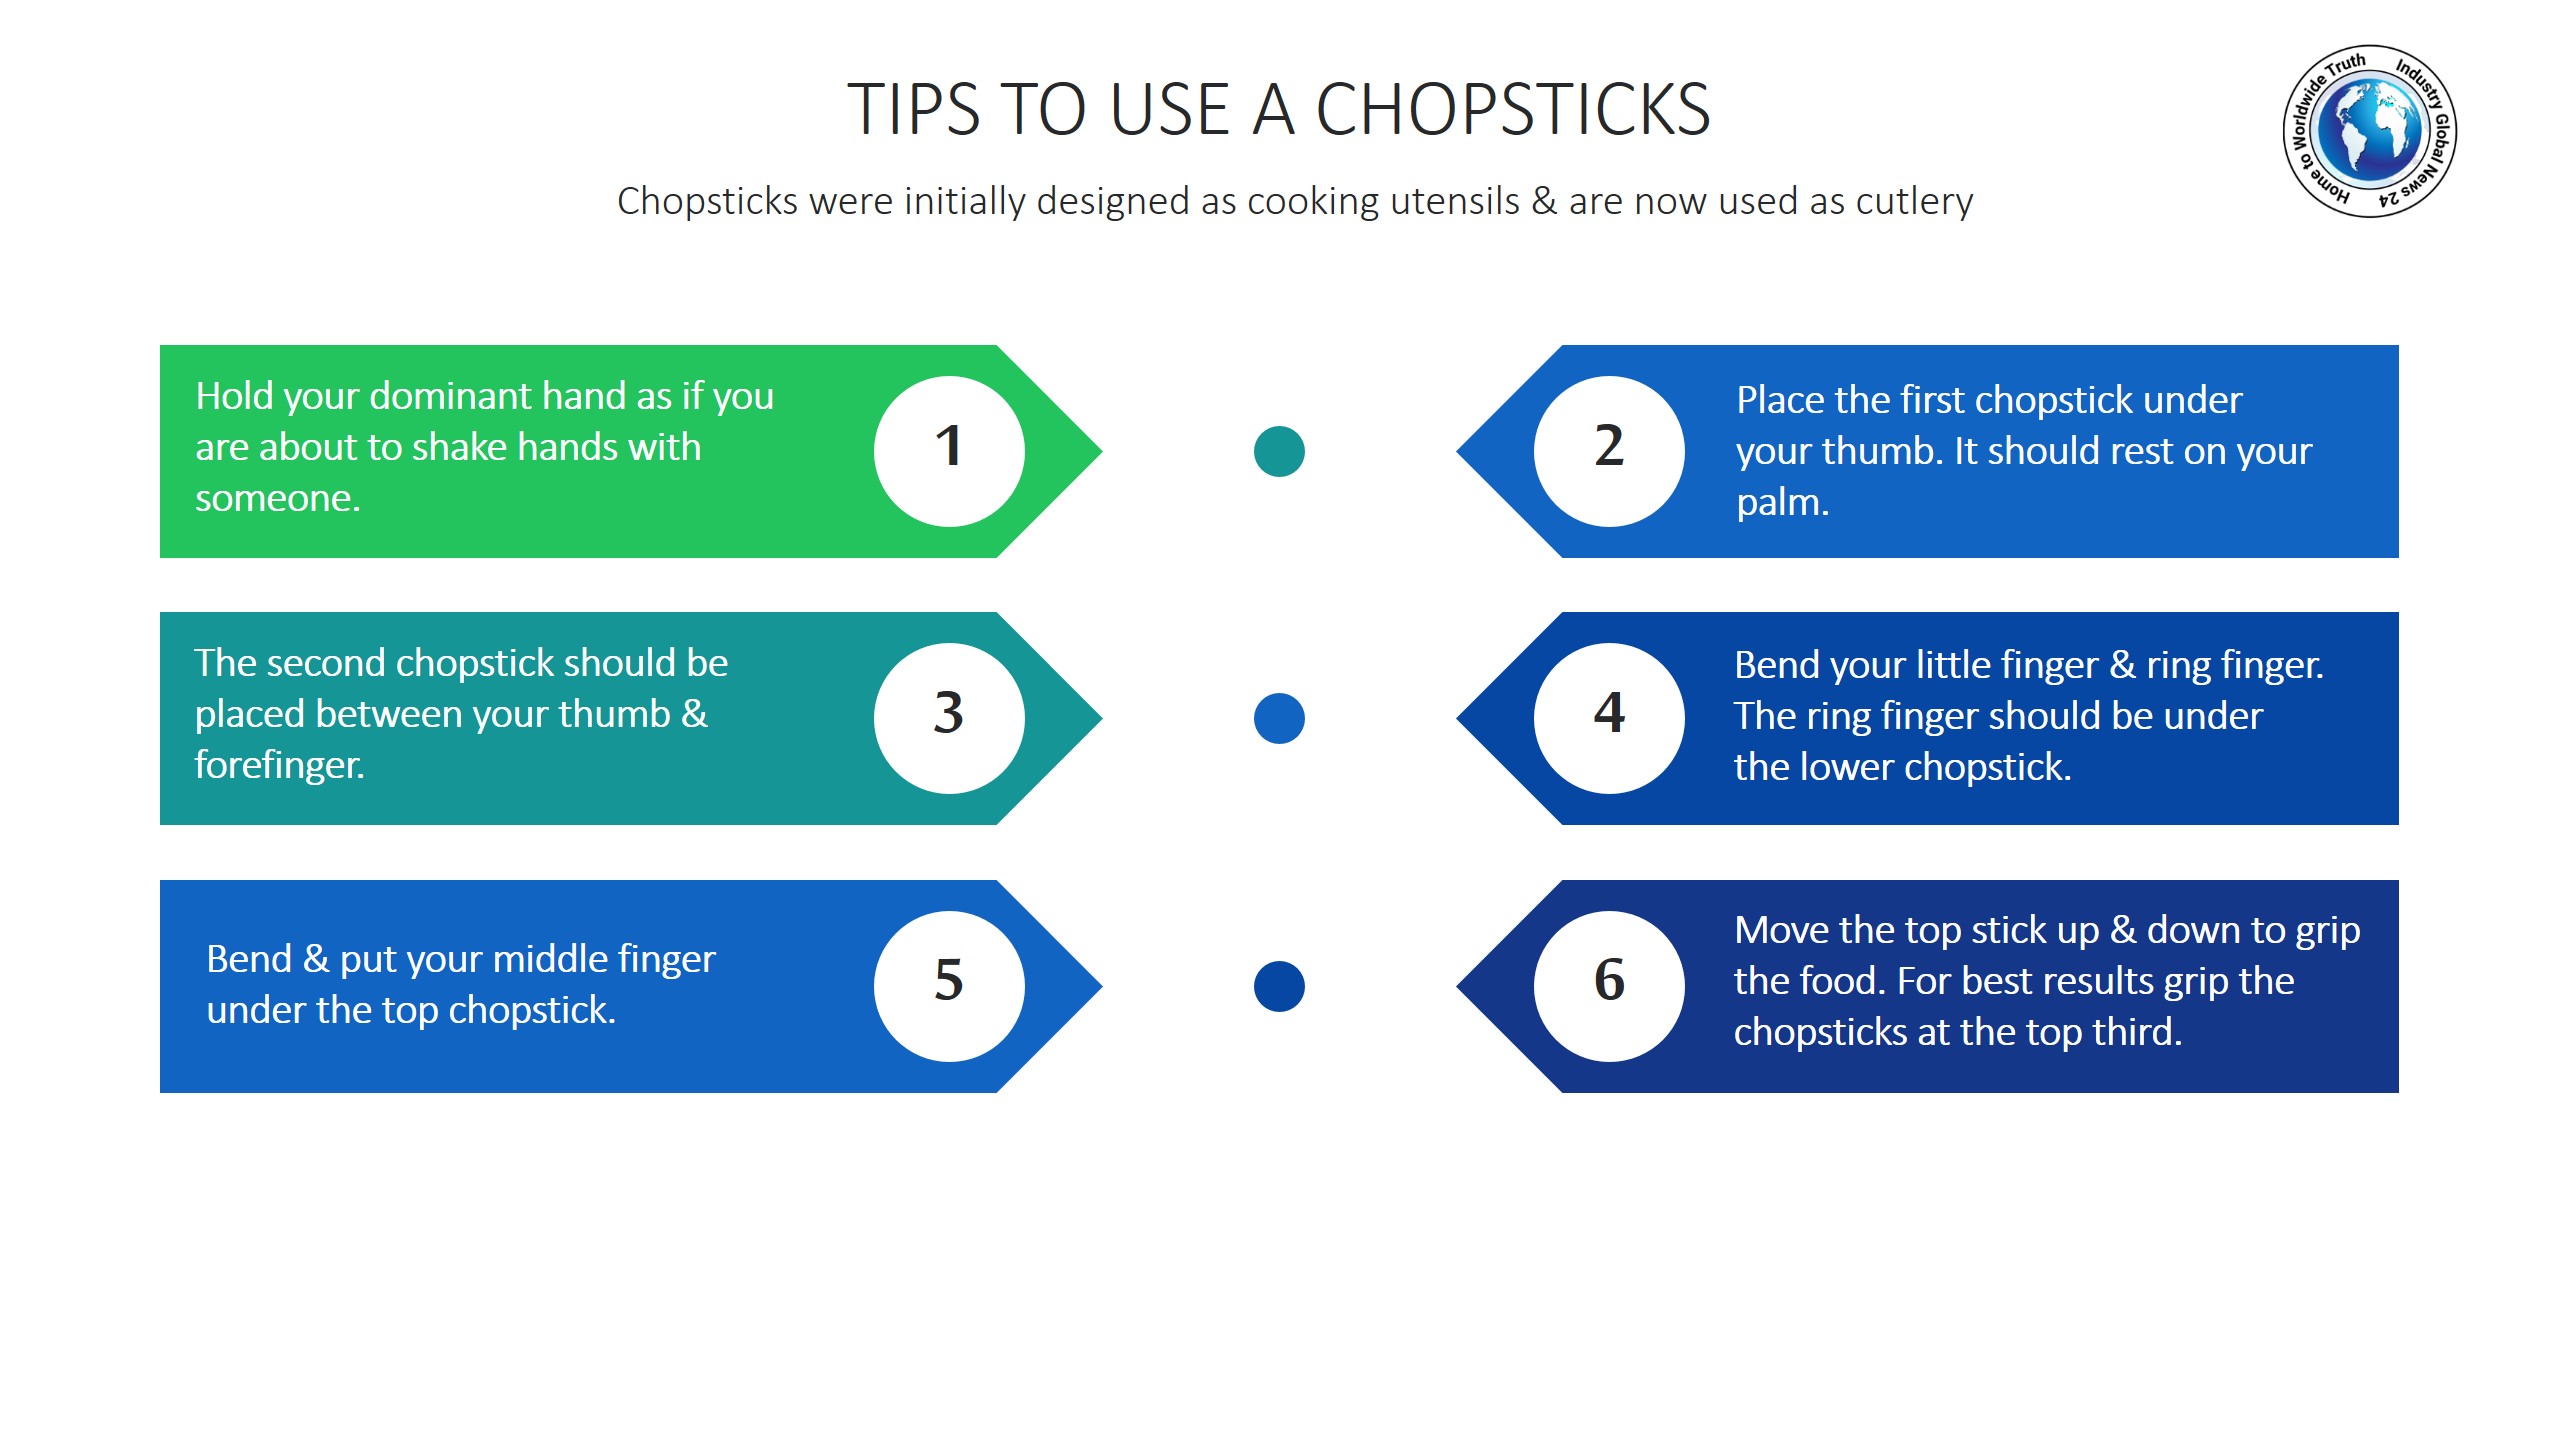 Tips to use a chopsticks